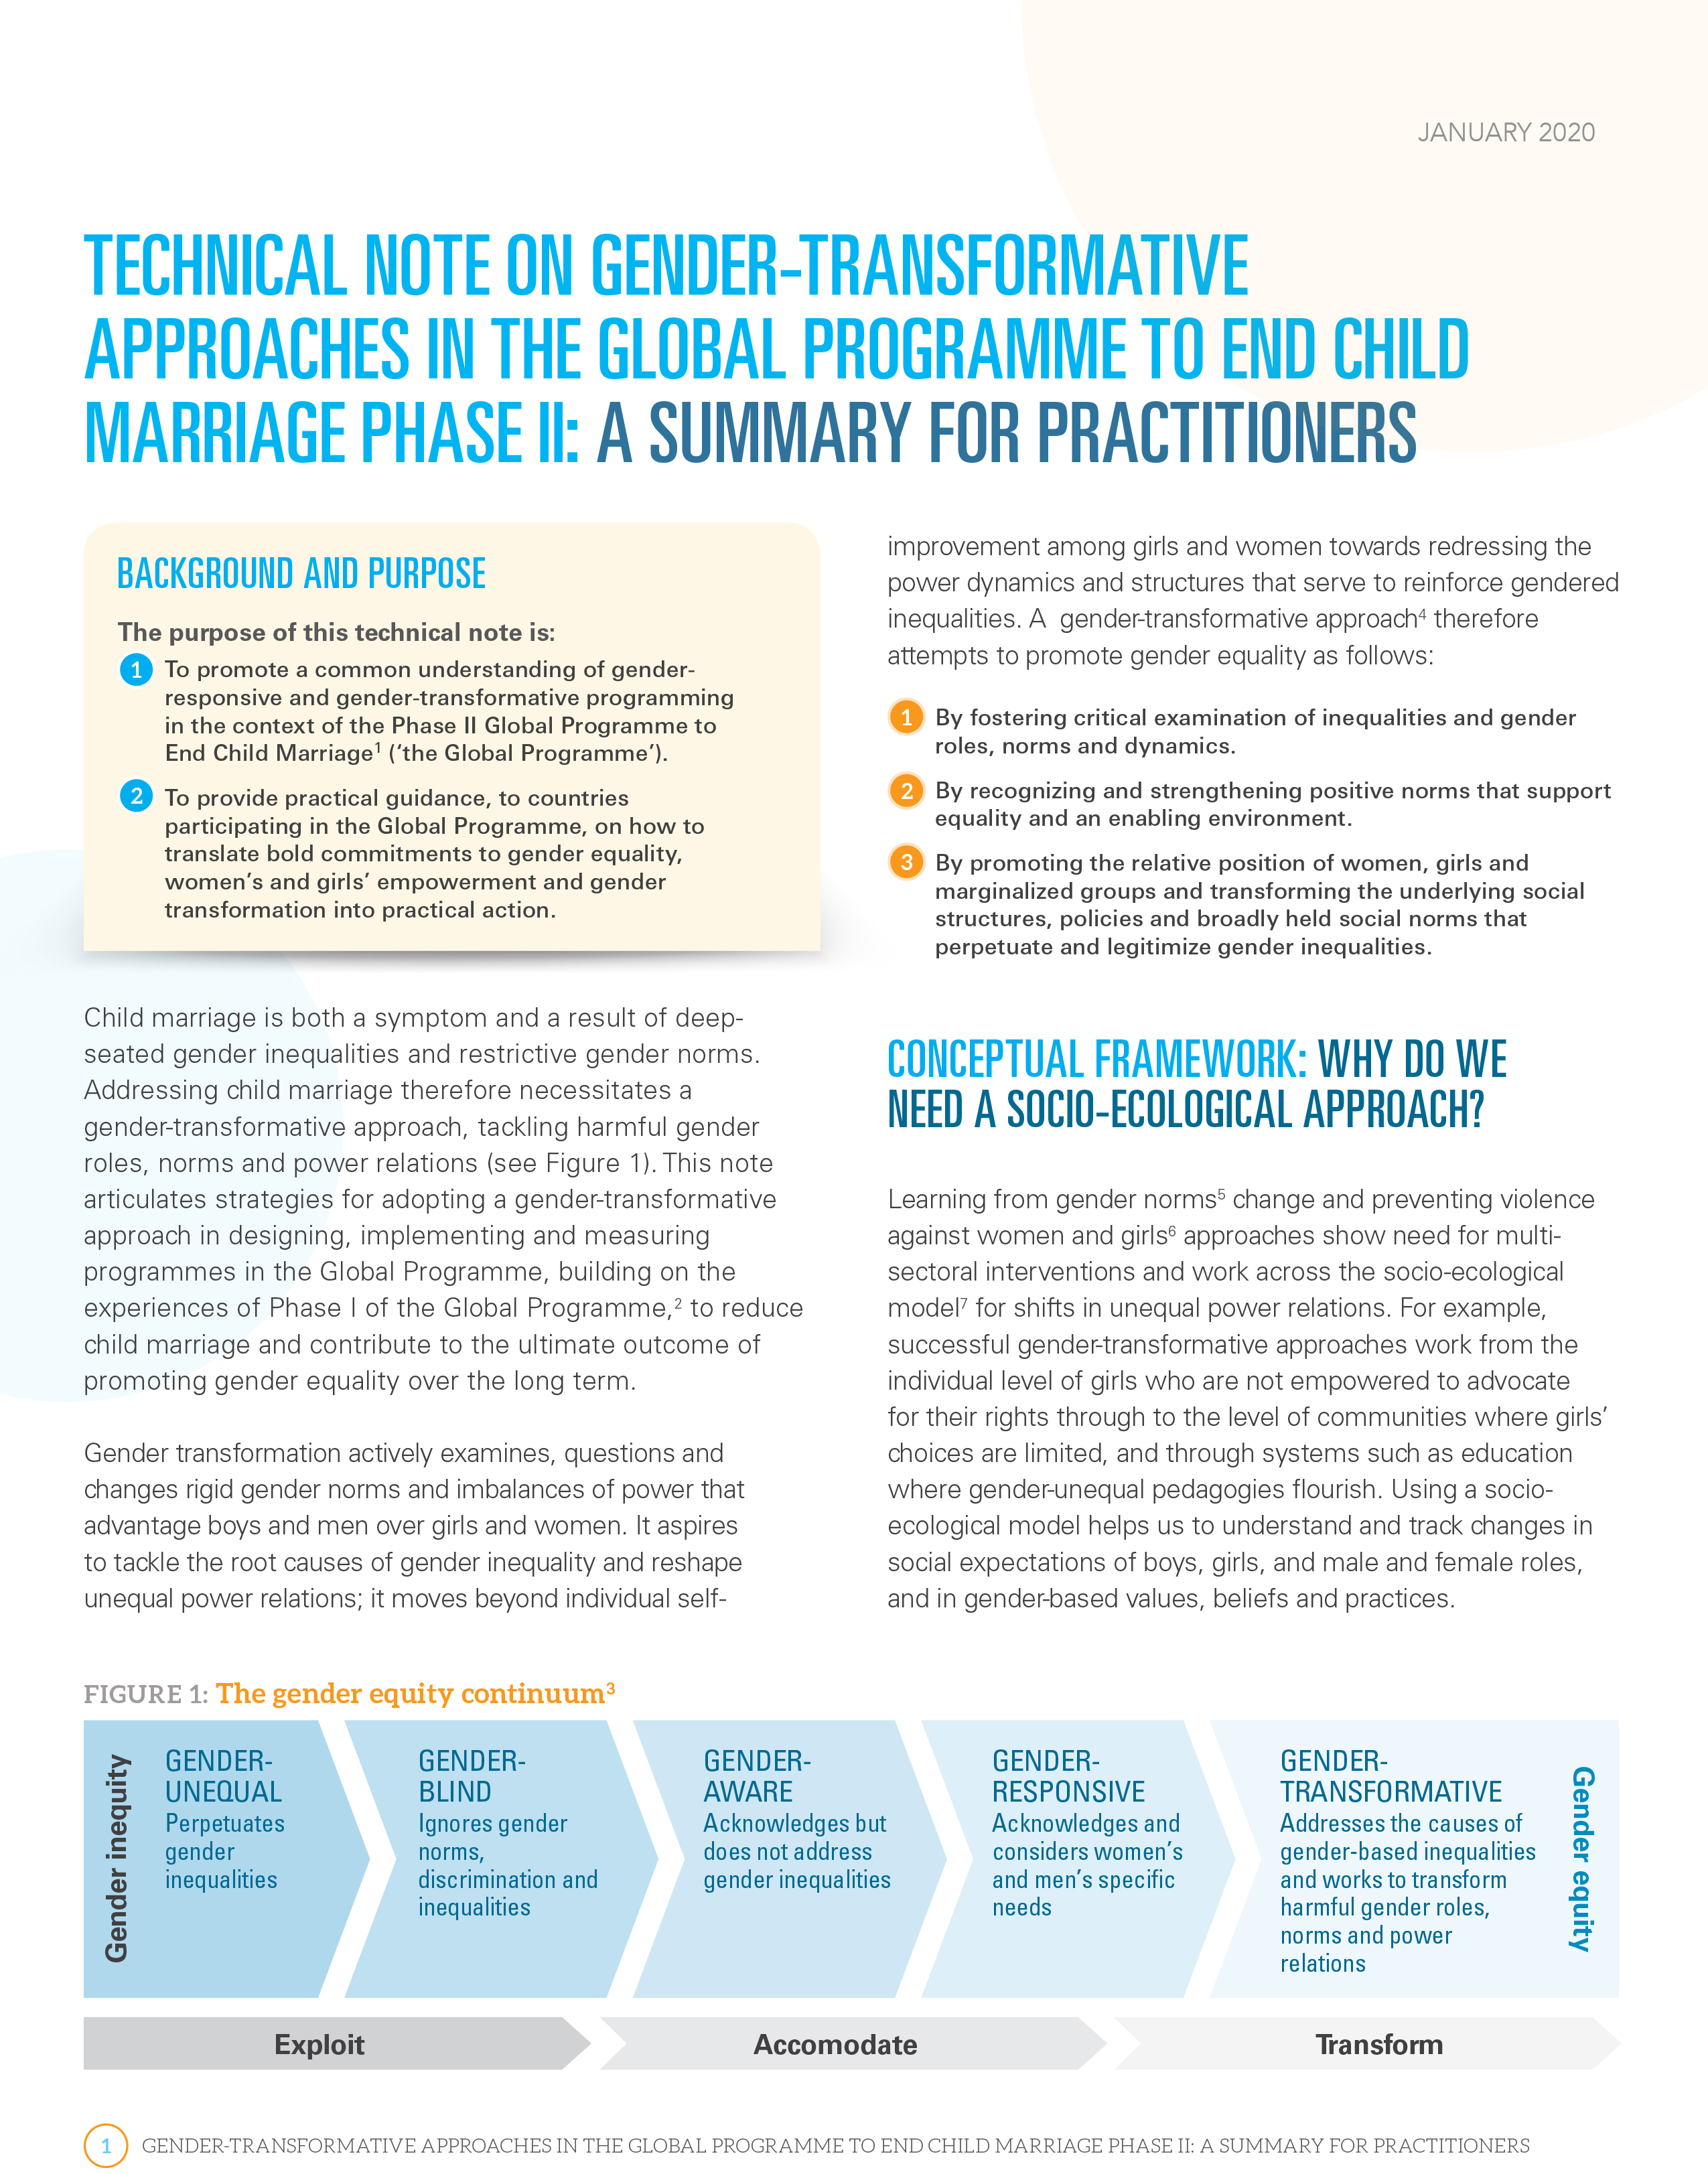 Note technique sur les approches transformatrices du genre dans le cadre du programme mondial pour mettre fin au mariage d’enfants (phase 2) – résumé pour les praticiens